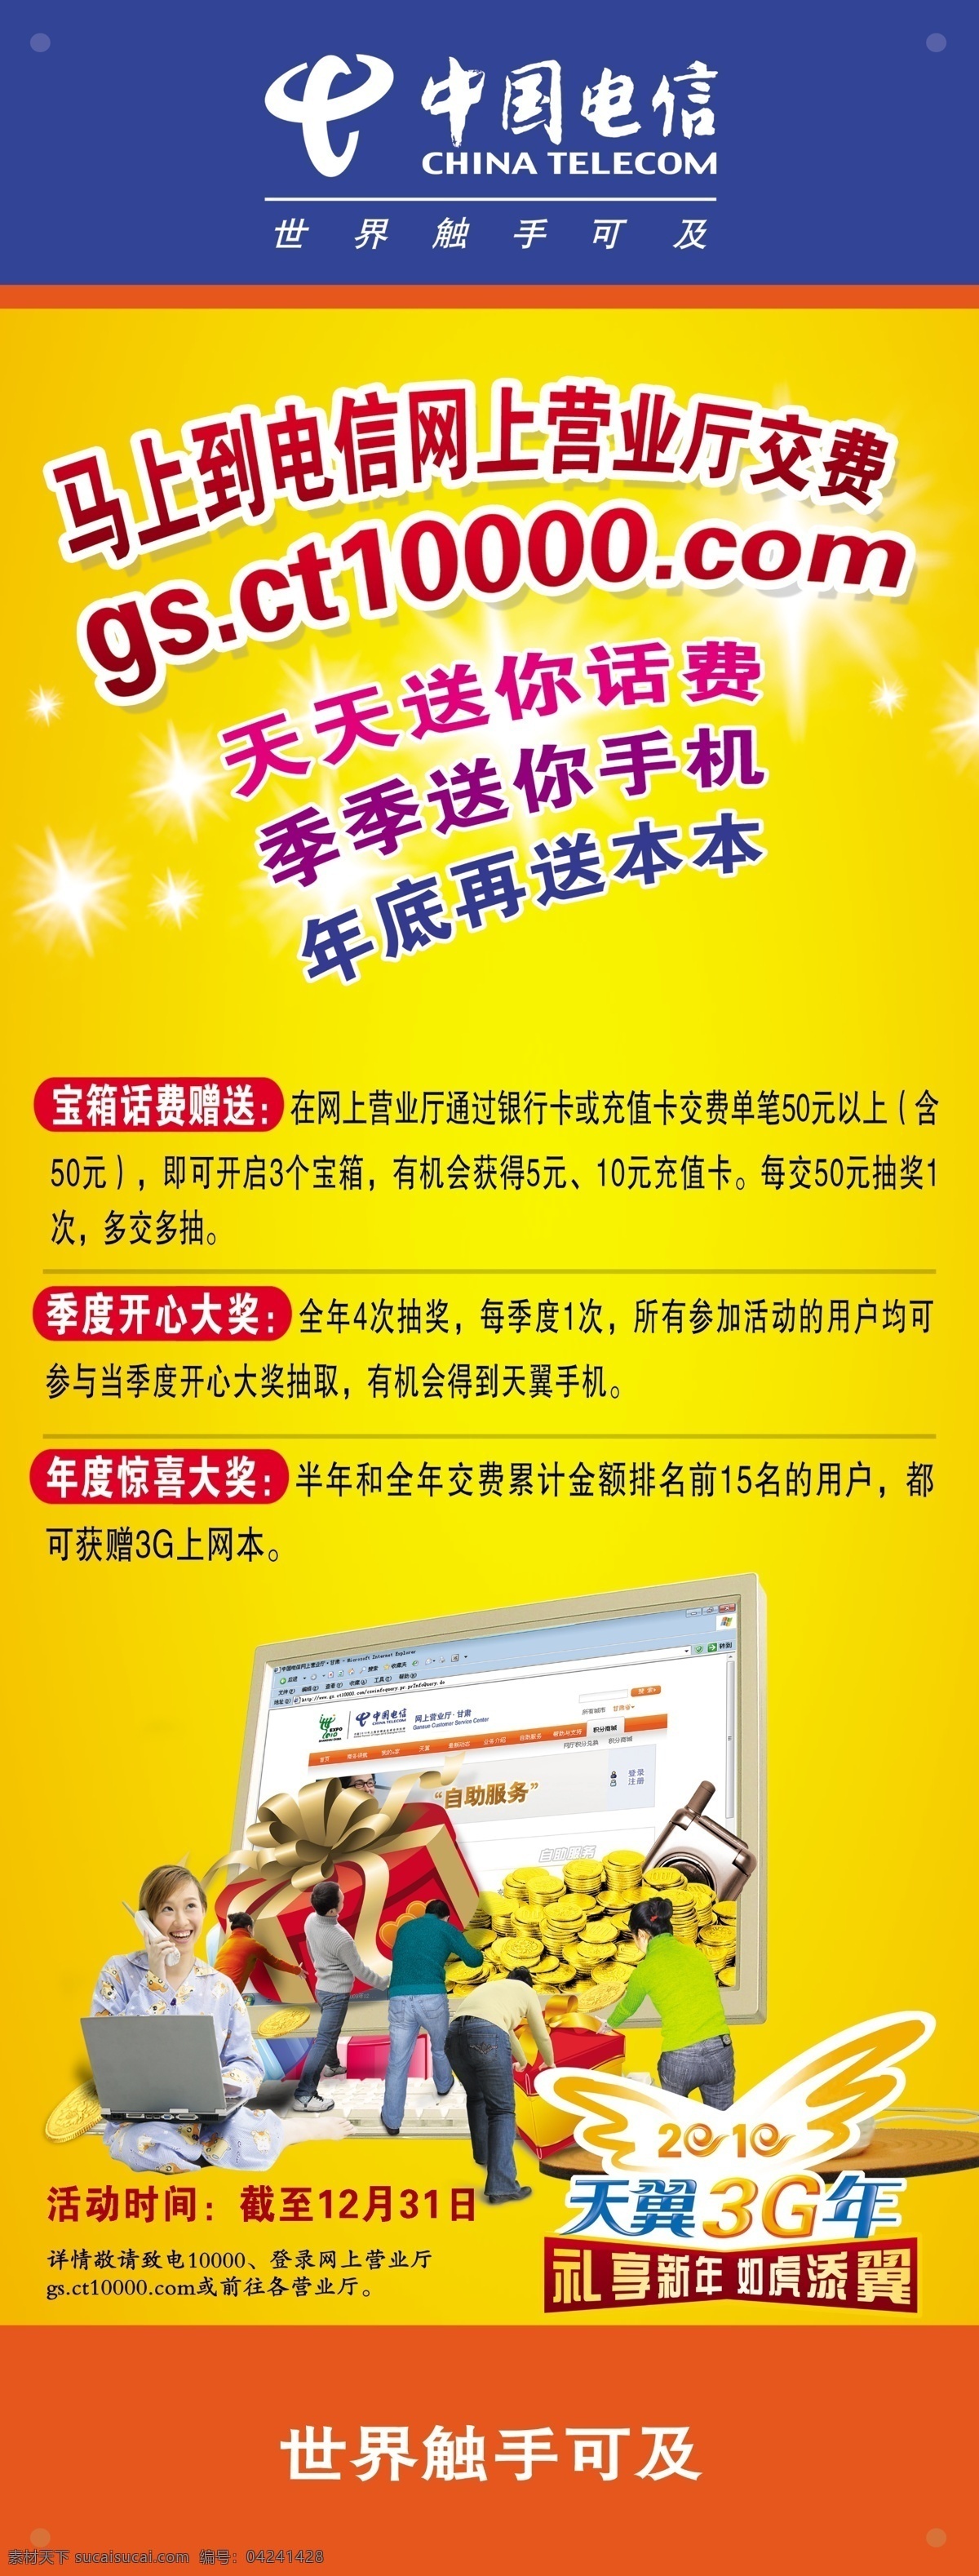 中国电信 x展架 广告设计素材 天翼3g 天翼3g广告 网厅抽奖活动 psd源文件